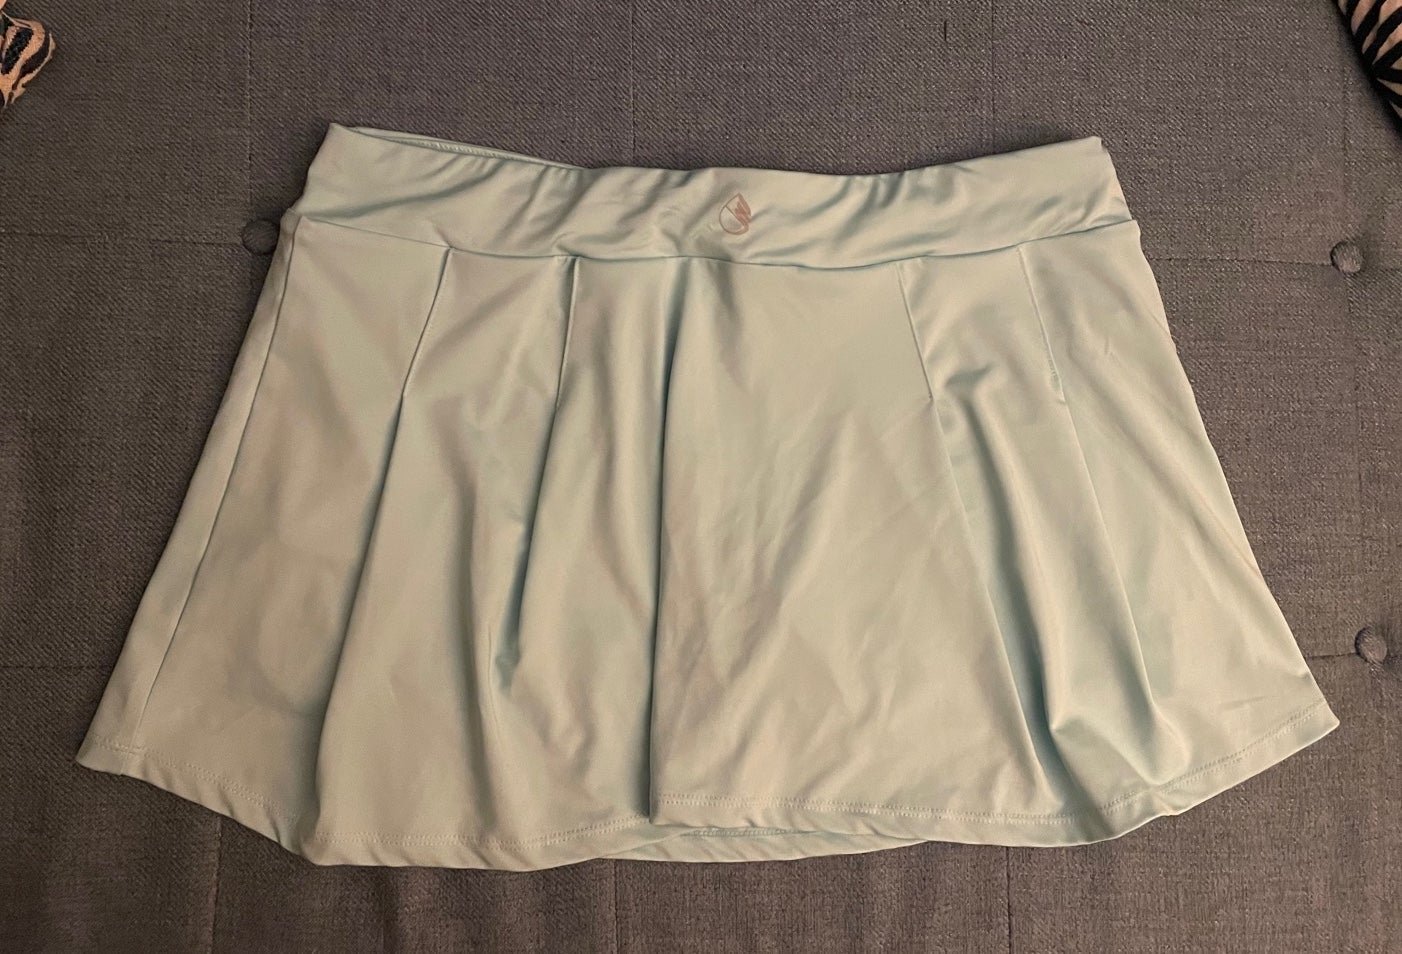 Custom New tennis golf Skirt skort size L HDaVDraxu Discount